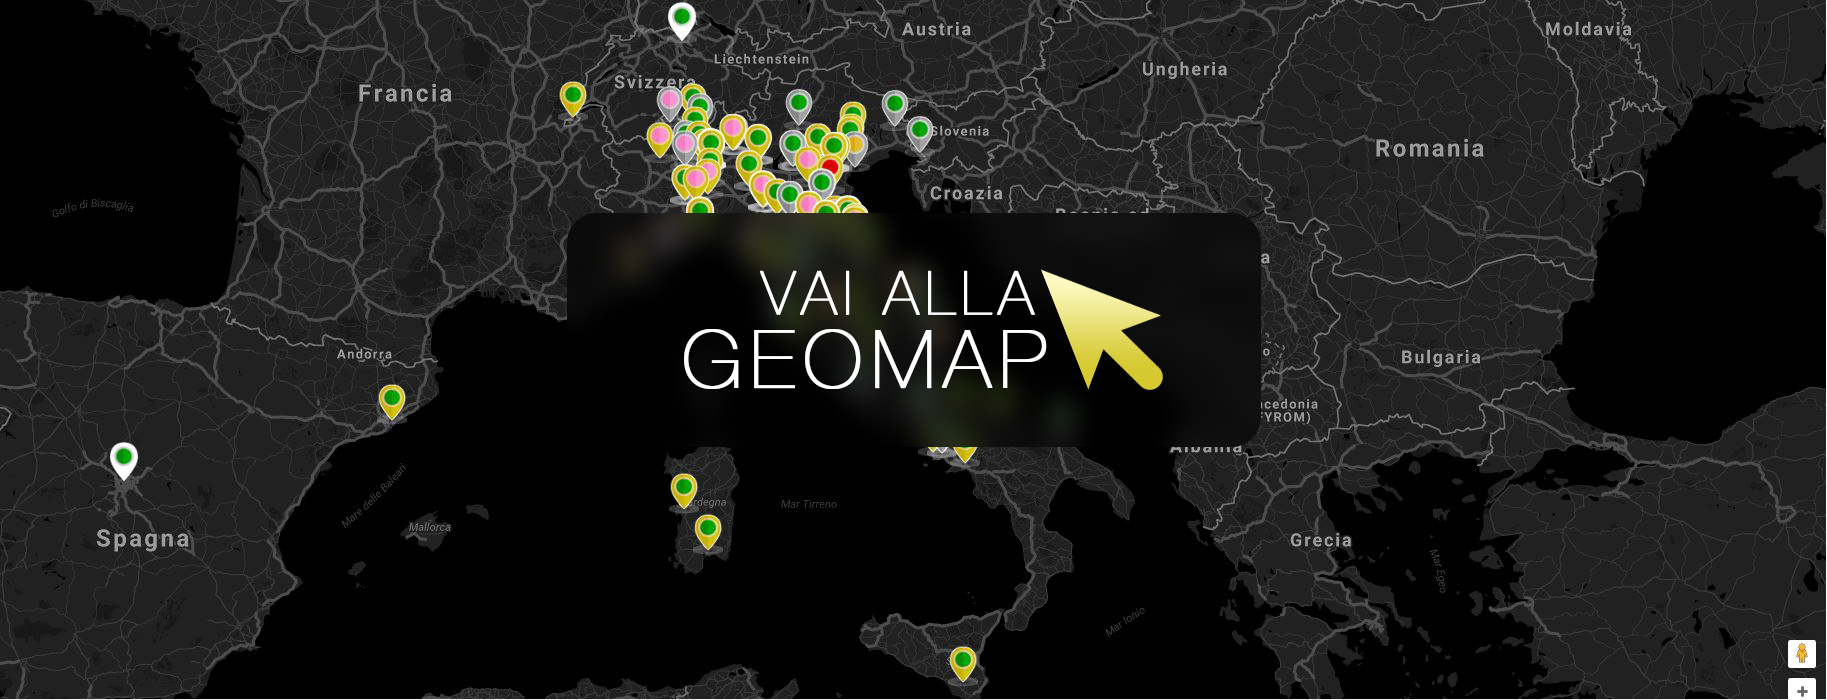 Guarda gli annunci a Alba Adriatica nella mappa intervattiva